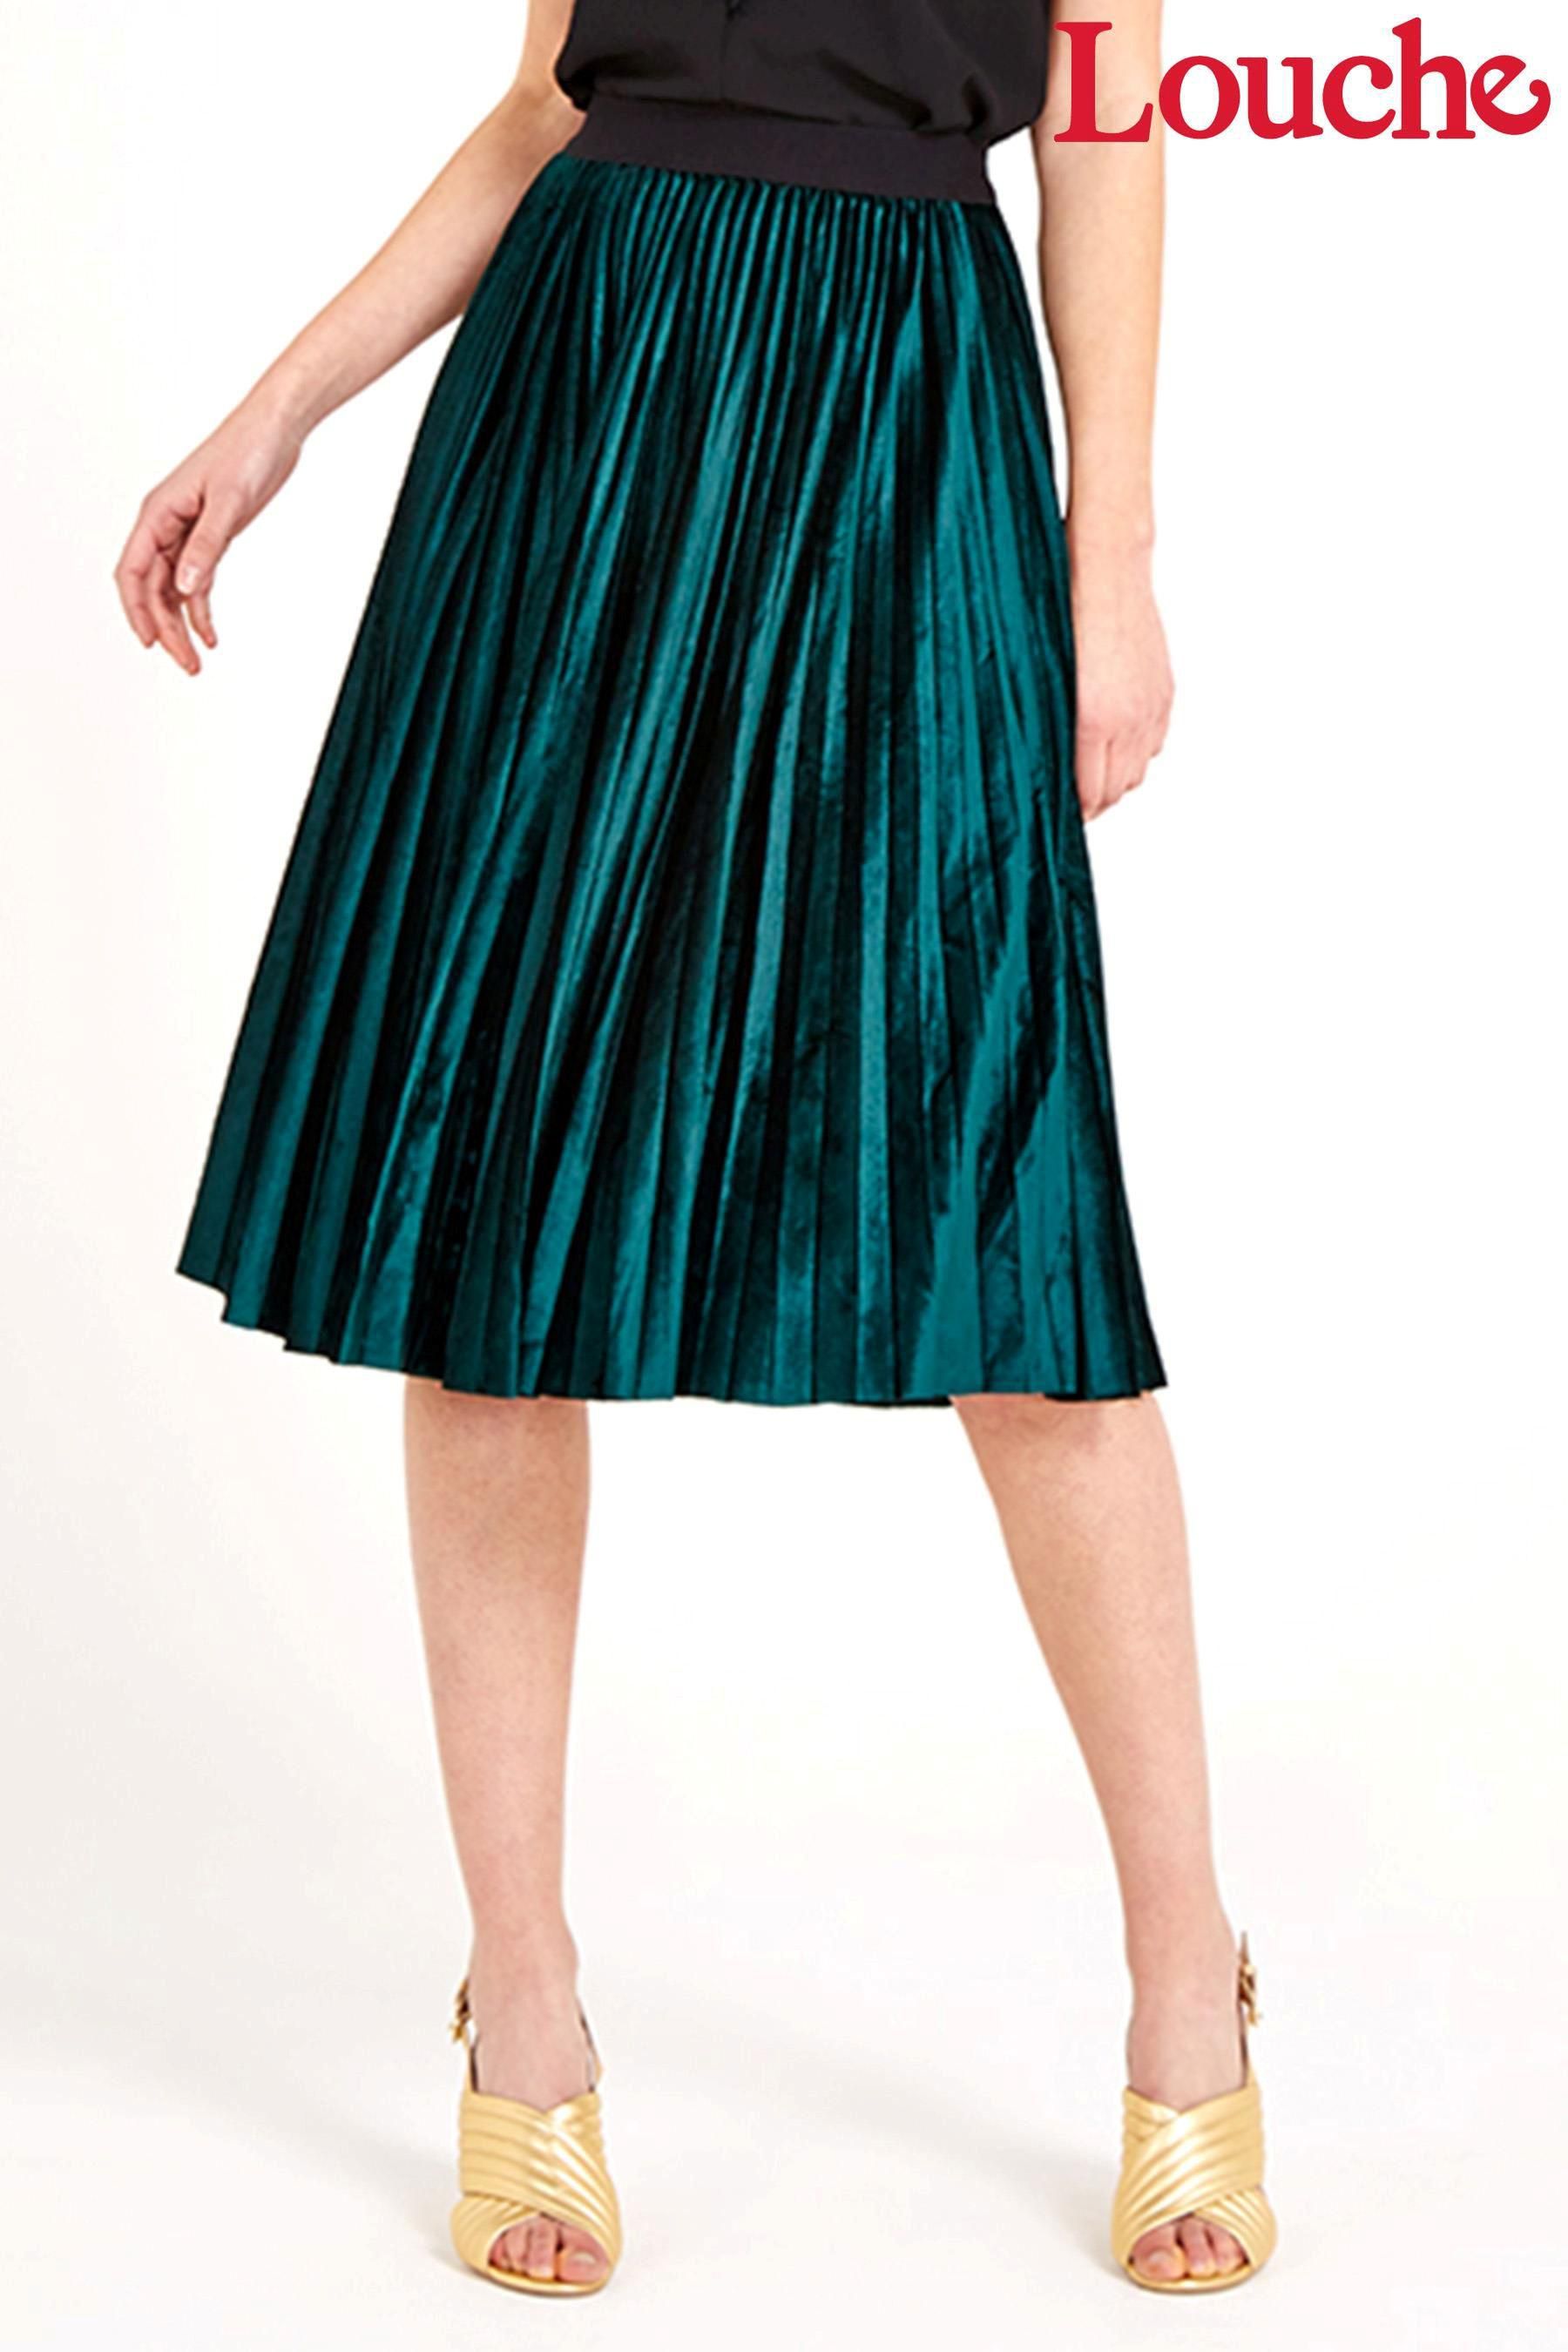 Louche Velvet Pleated Midi Skirt